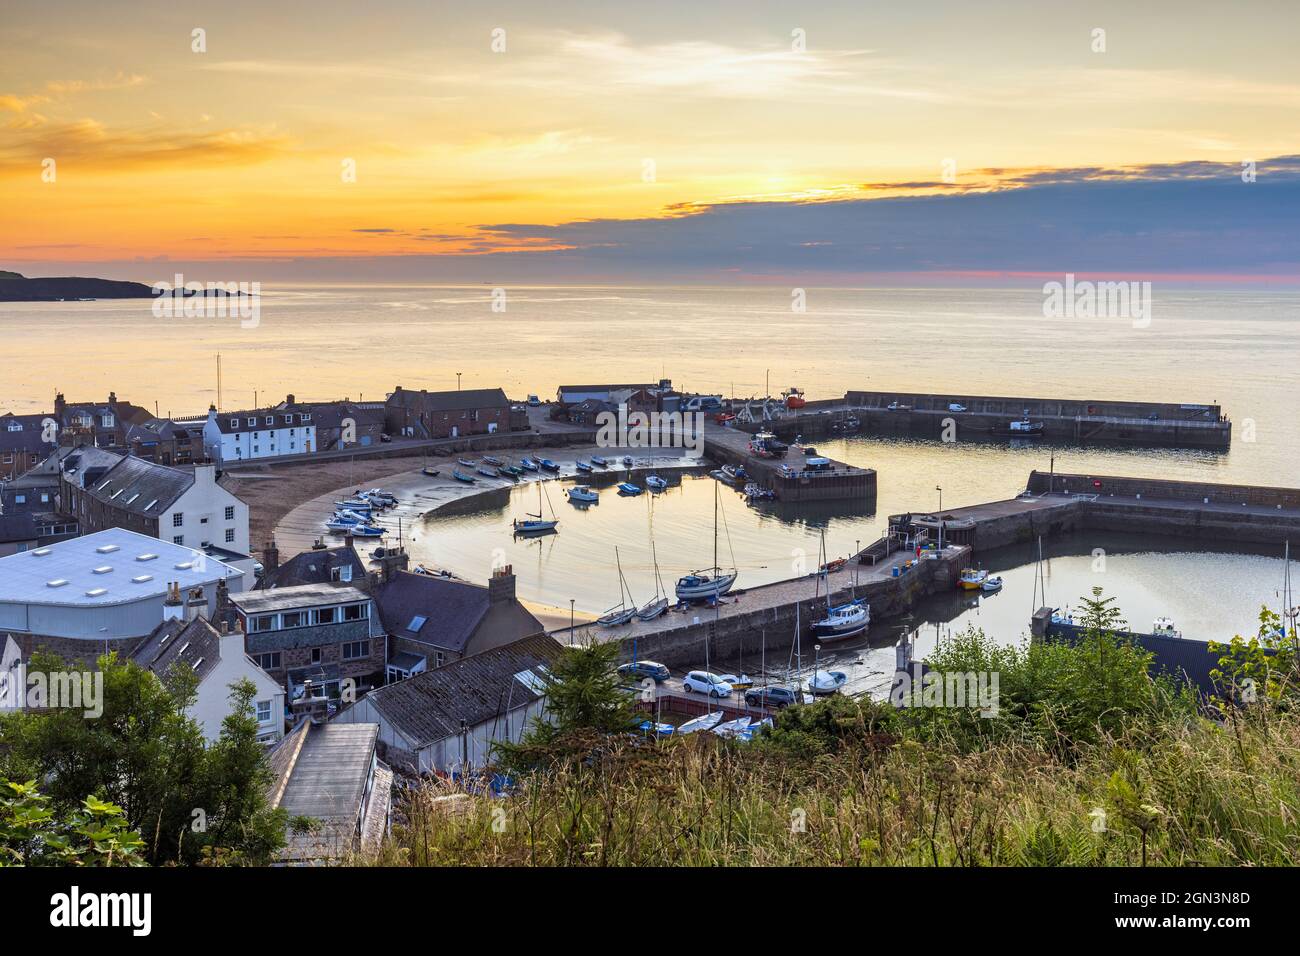 Porto di Stonehaven all'alba. Stonehaven è una città portuale nell'Aberdeenshire situata a sud di Aberdeen, sulla costa nord-orientale della Scozia. Foto Stock